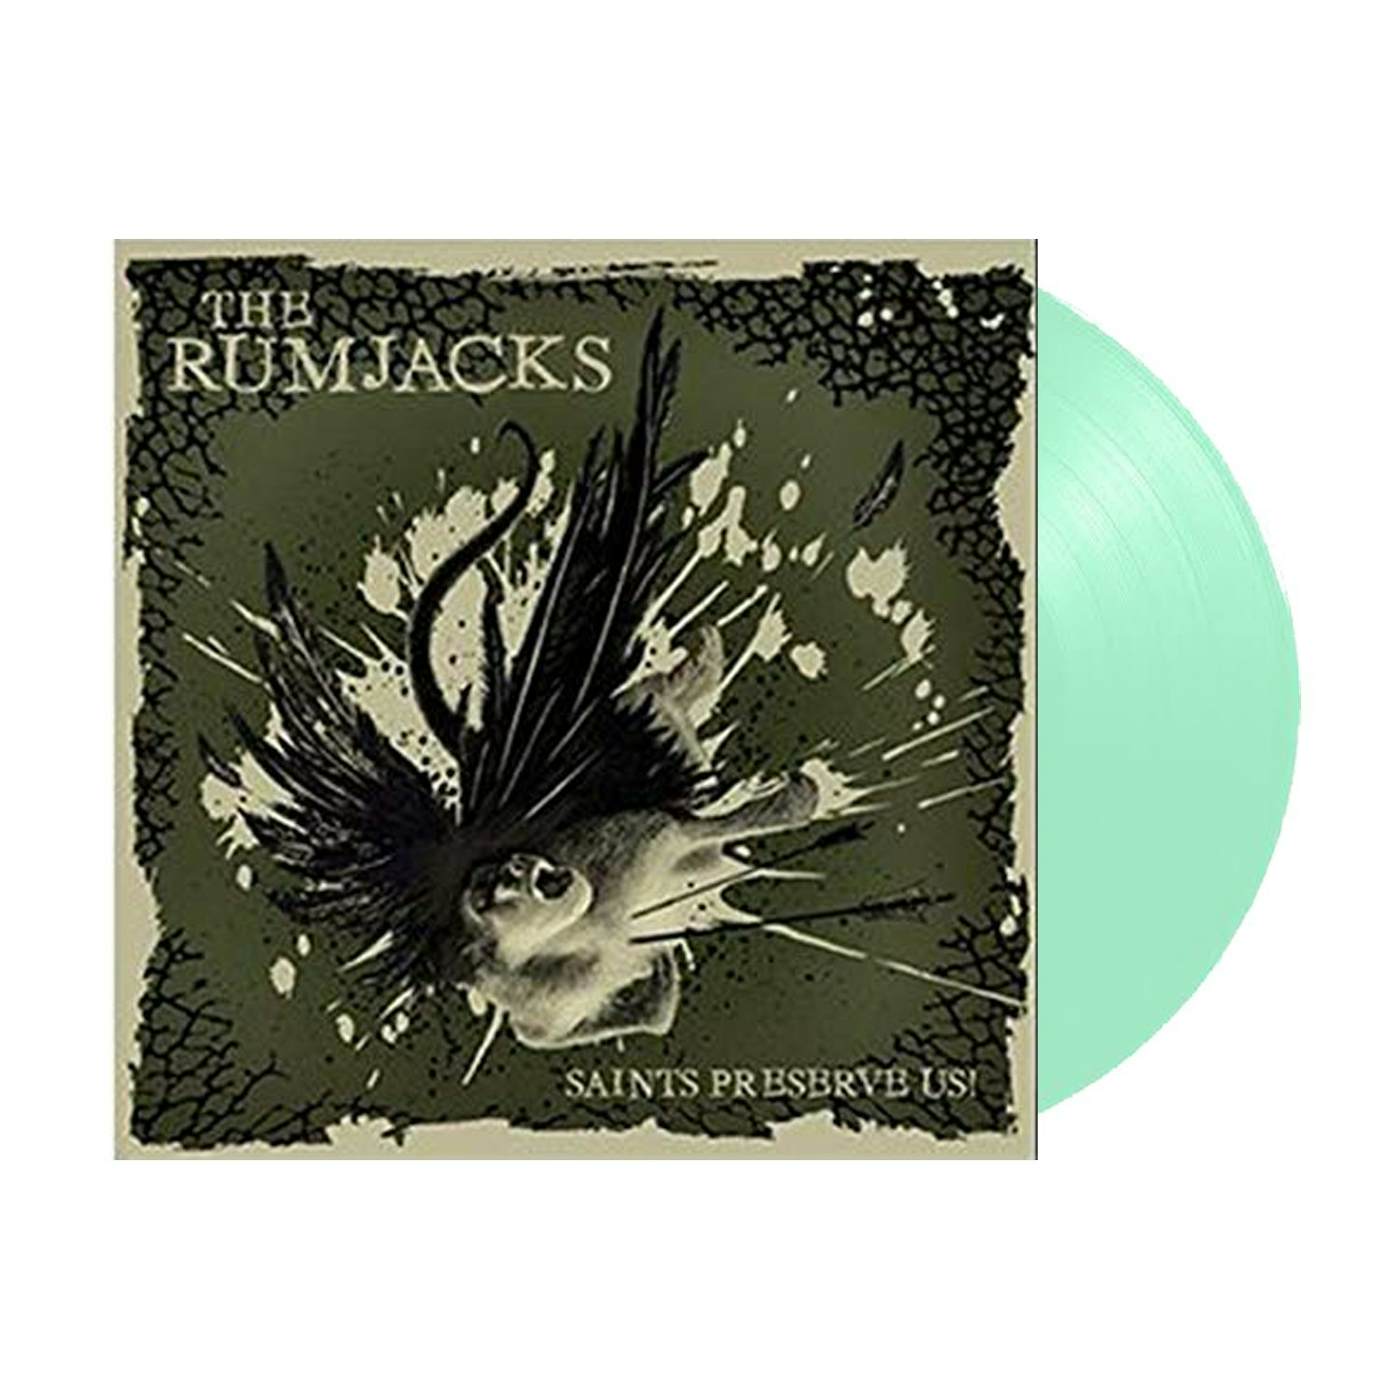 The Rumjacks Saints Preserve Us! LP (Mint Green) (Vinyl)